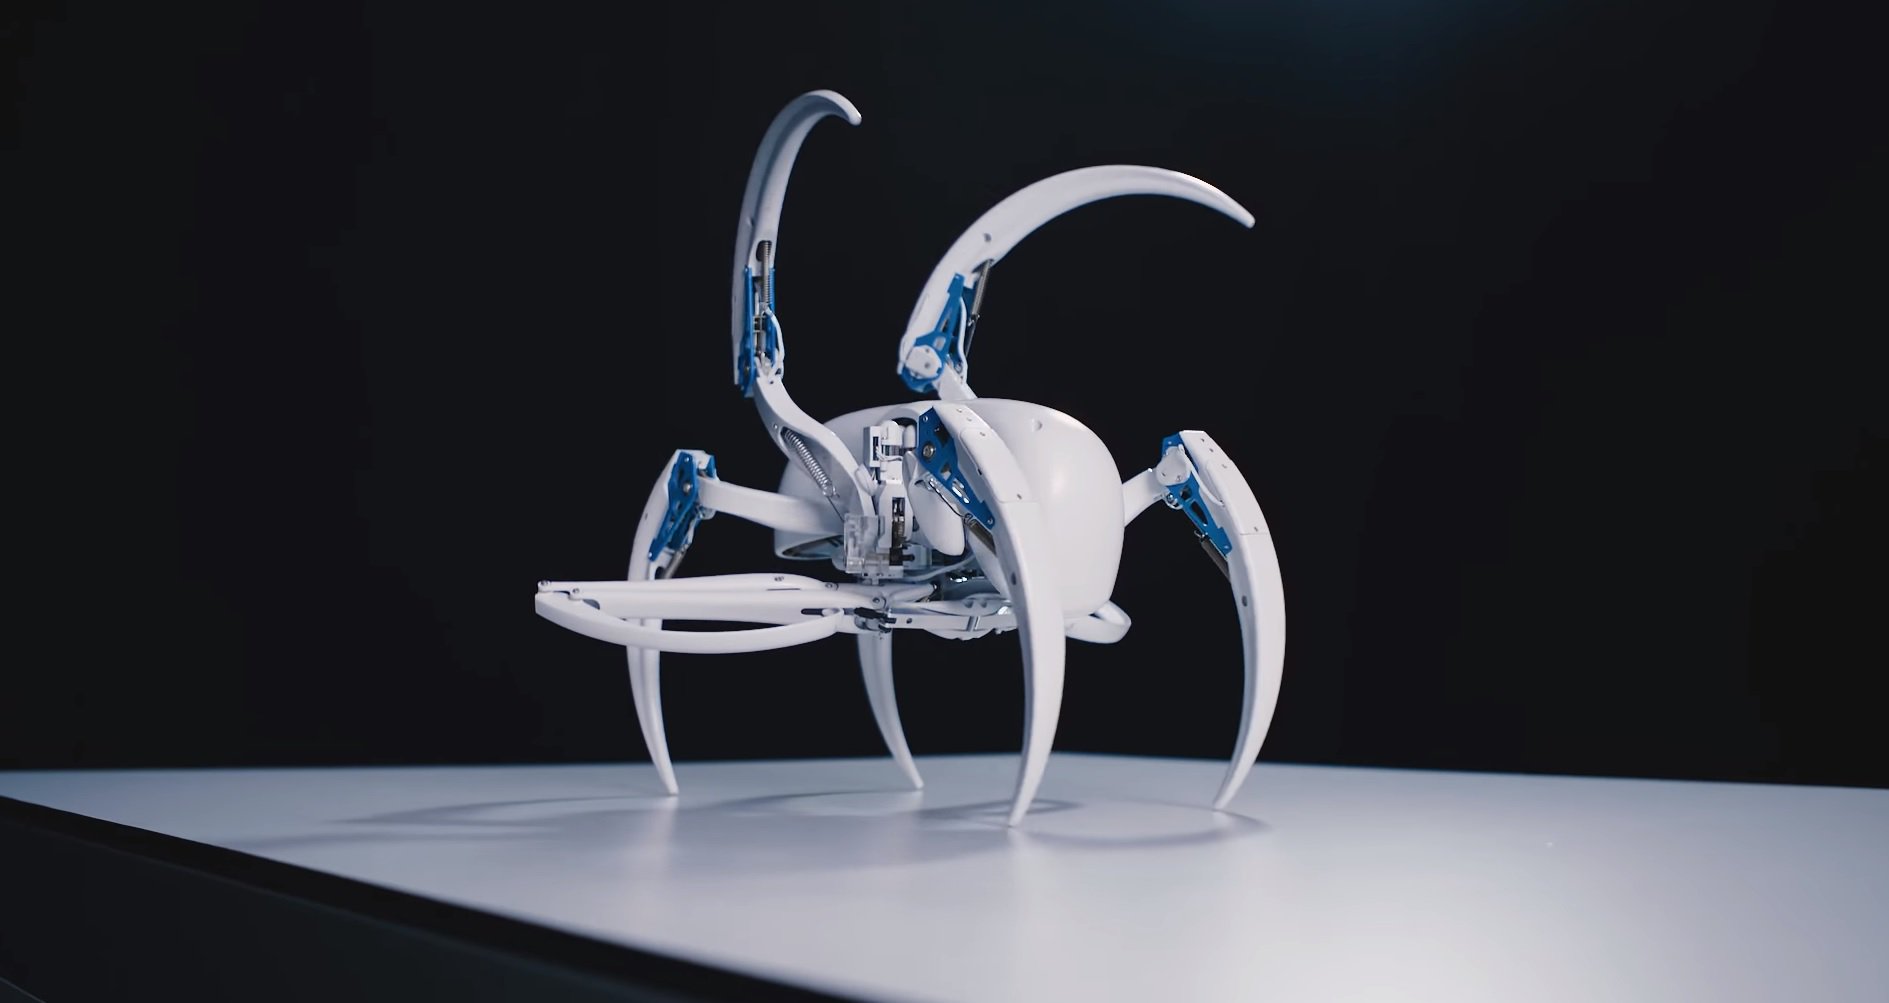 #відео дня | Новий робот-павук від компанії Festo